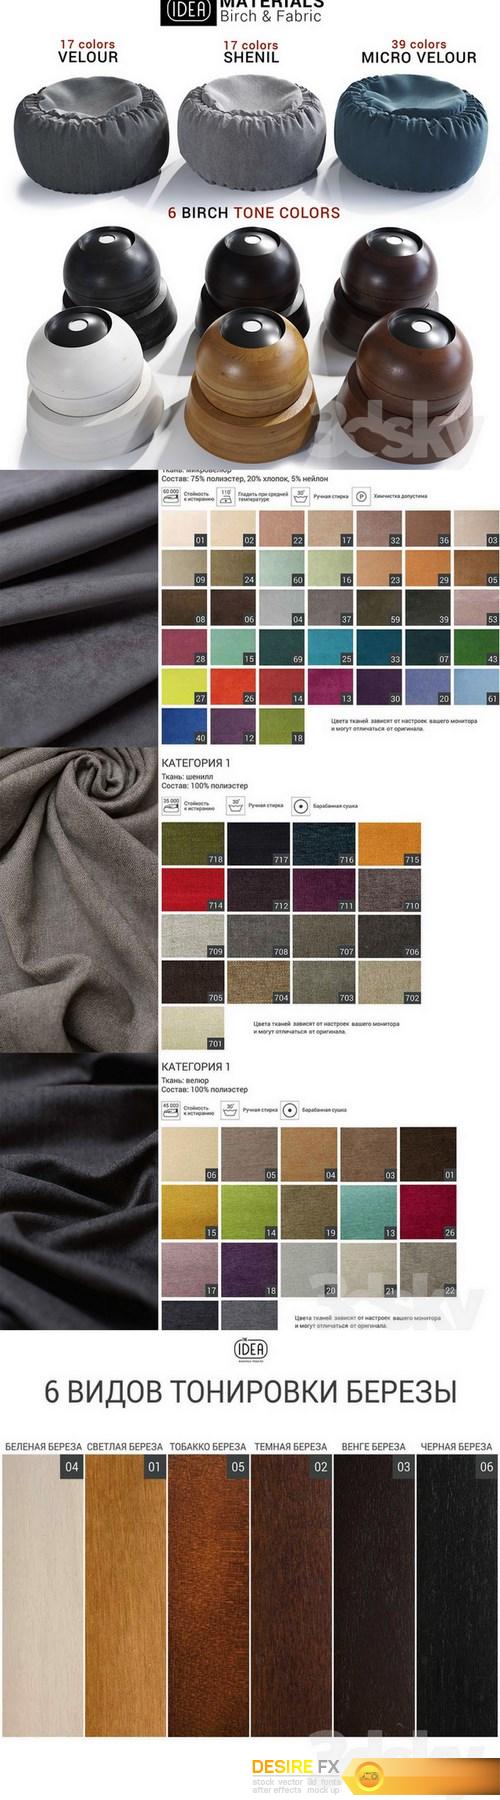 The Idea Materials Birch & Fabric